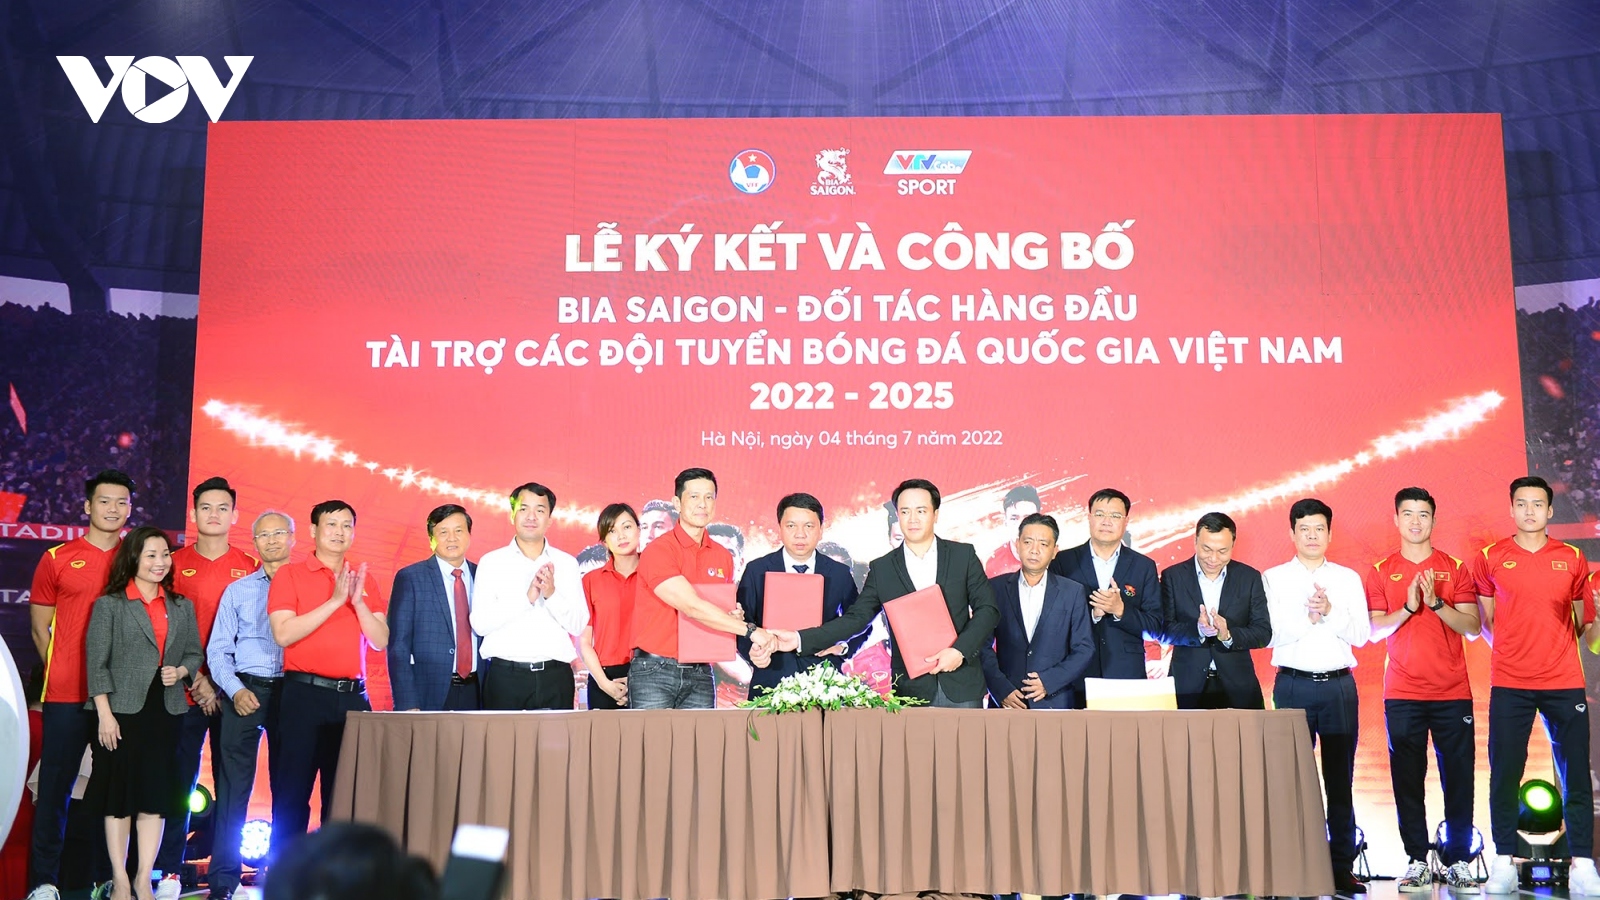 Các đội tuyển bóng đá Việt Nam có thêm nhà tài trợ "khủng" trong 3 năm